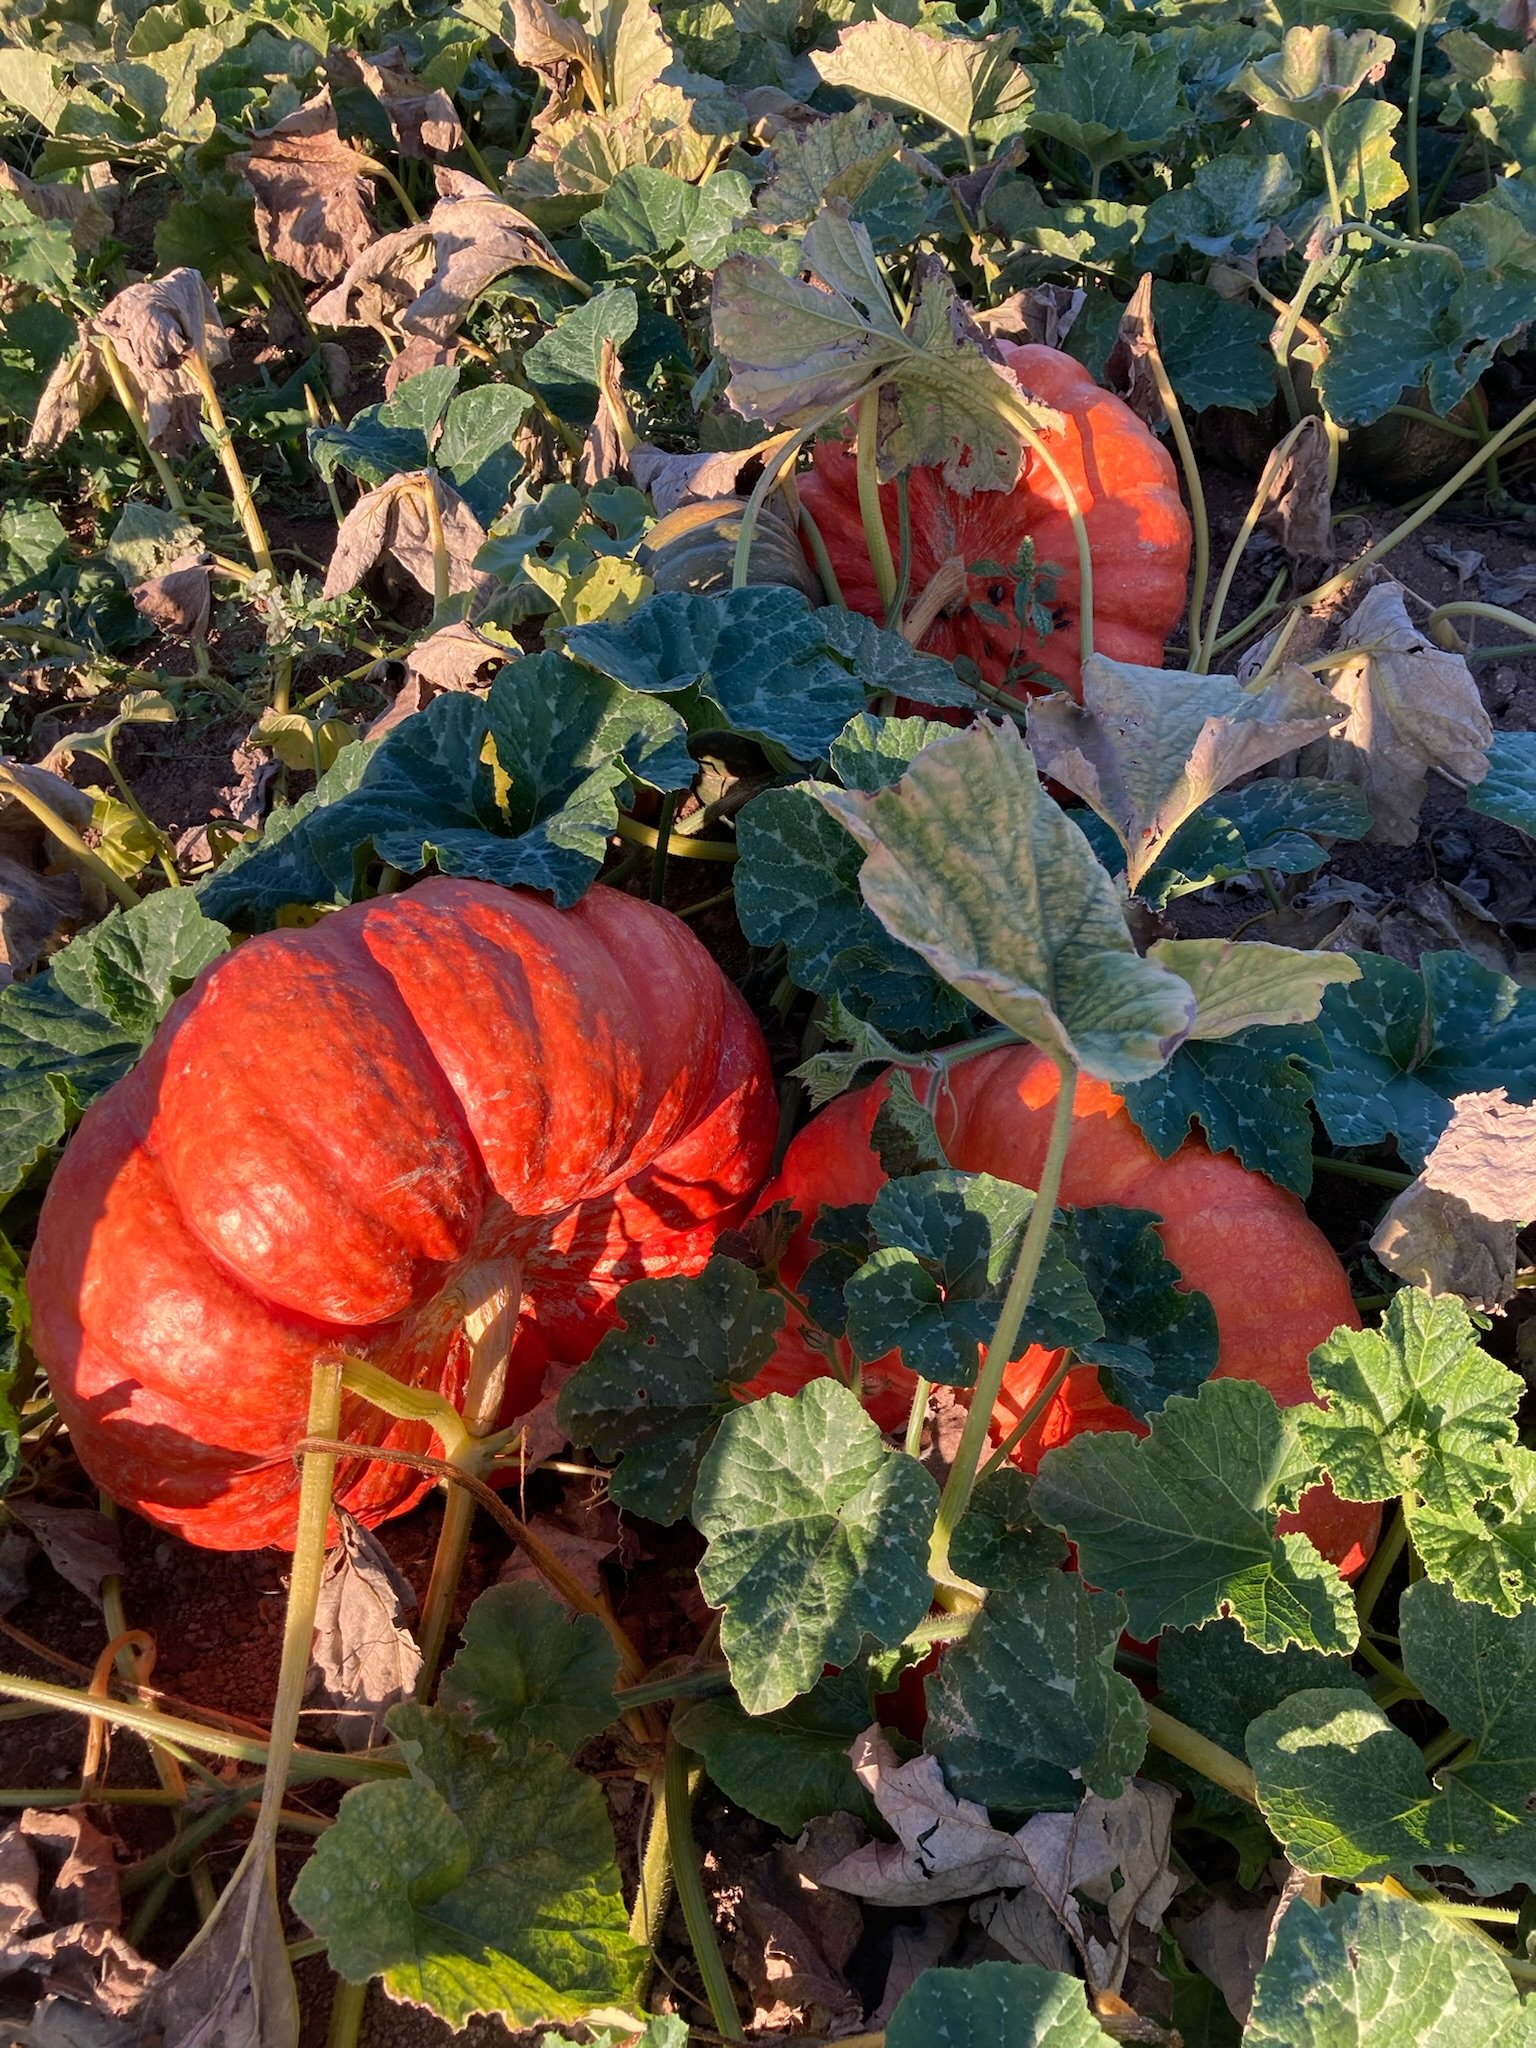  2022 “Cinderella” variety pumpkins in the field  